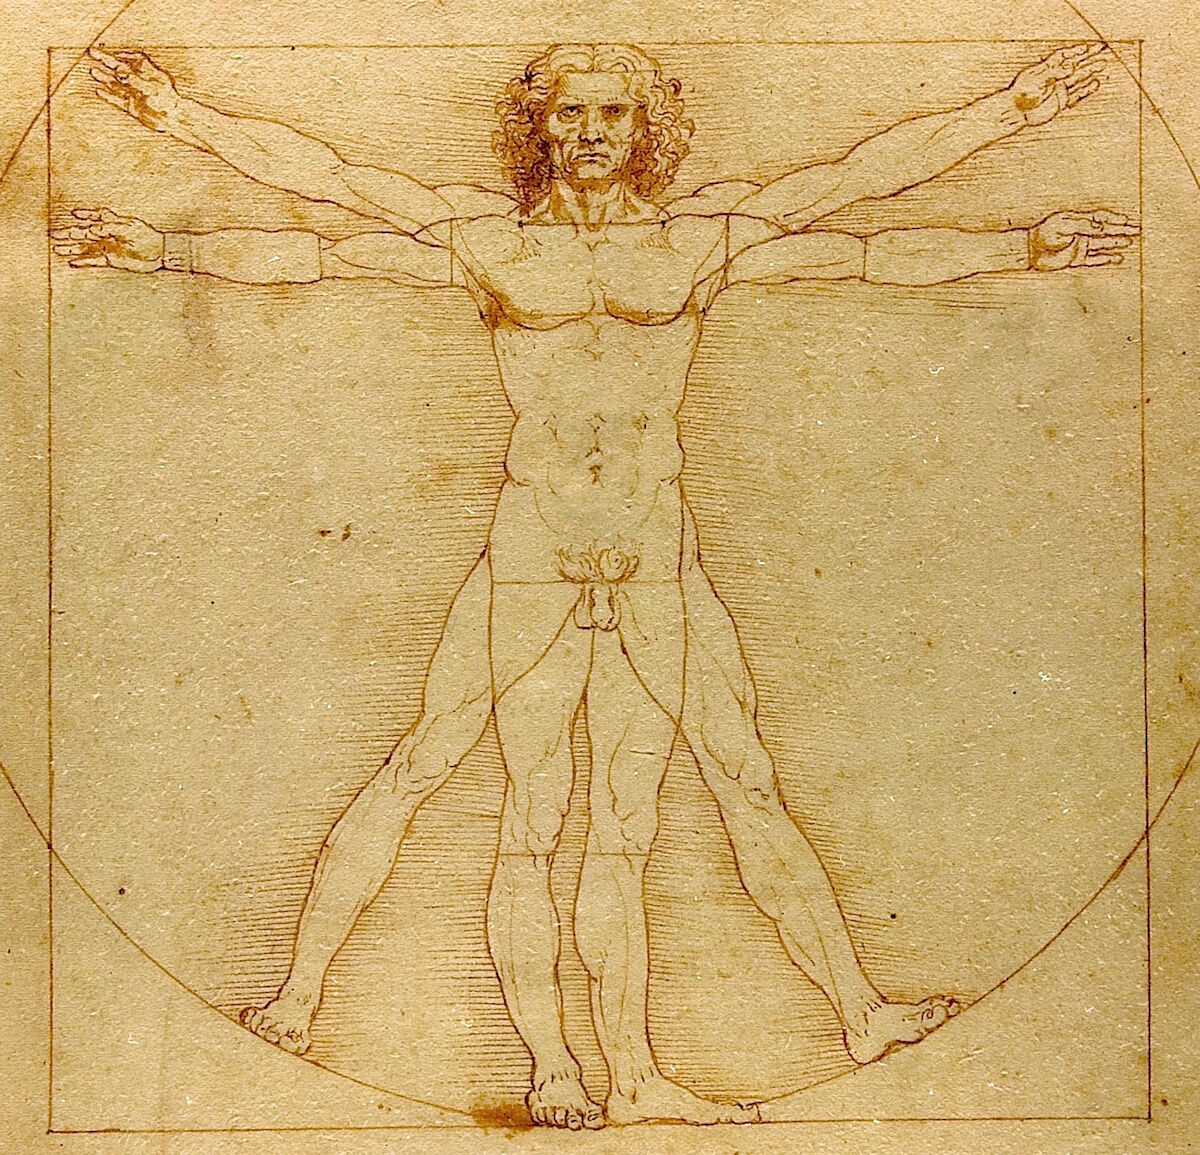 Leonardo da Vinci, Vitruvian Man, ca. 1490. Gallerie dell’Accademia, Venice. Image by Beat Ruest, via Wikimedia Commons.